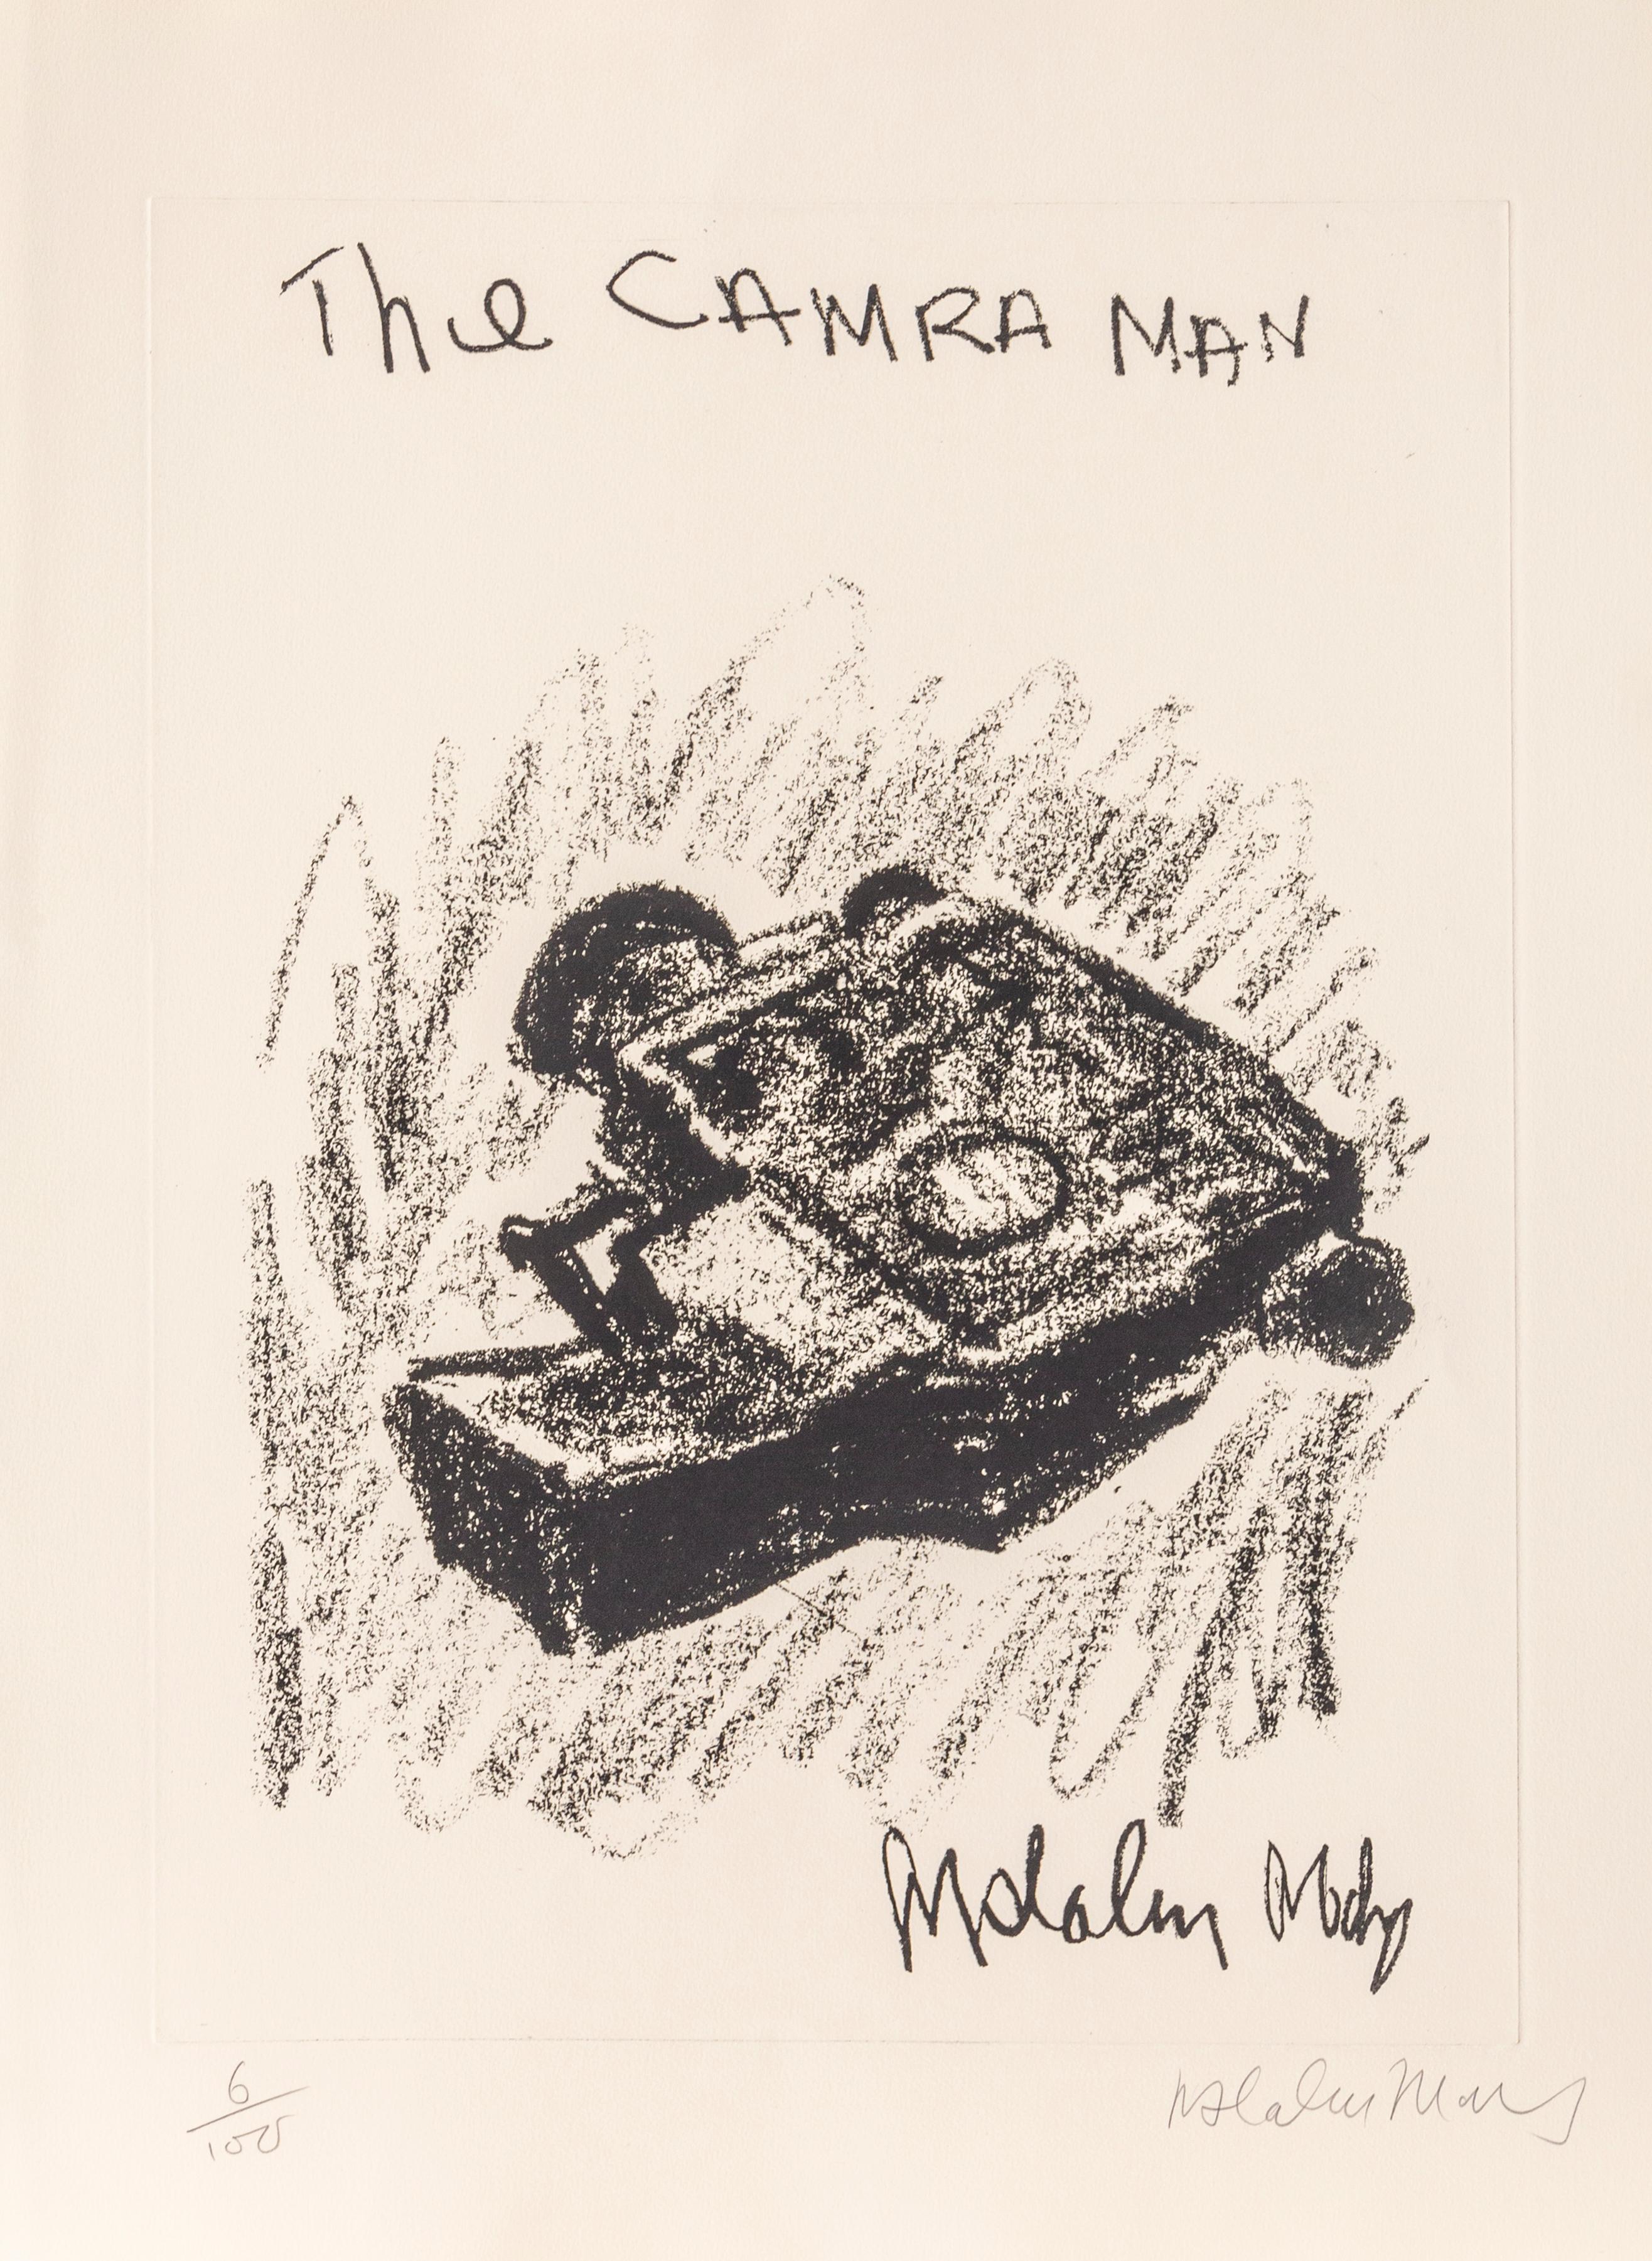 L'homme Camra
Malcolm Morley, Britannique (1931-2018)
Date : vers 1980
Eau-forte, signée et numérotée au crayon
Edition de 100
Taille : 30 in. x 22.5 in. (76,2 cm x 57,15 cm)